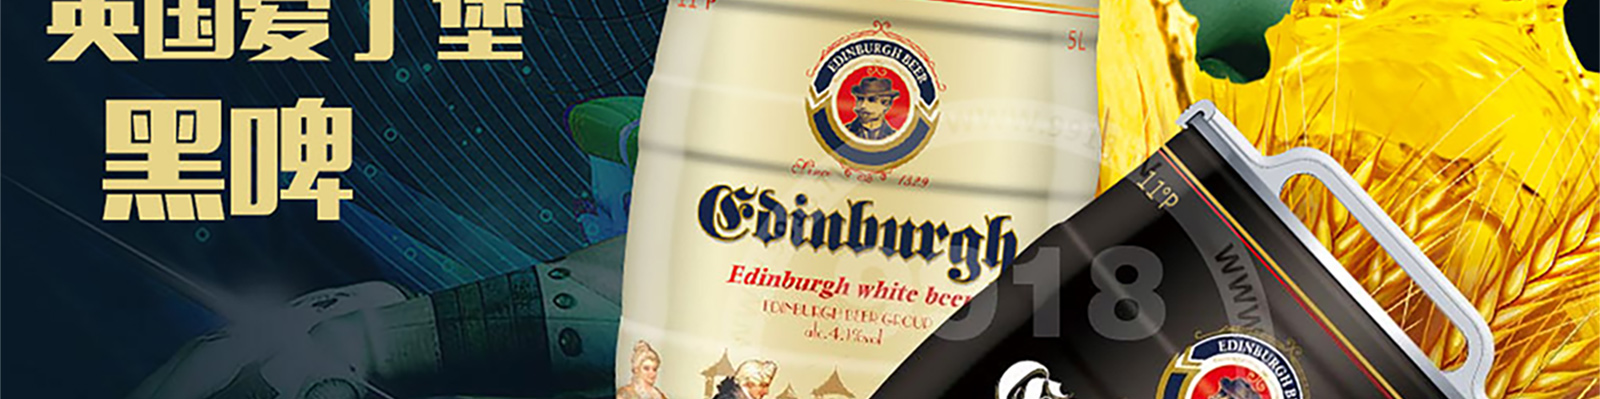 英国爱丁堡啤酒集团国际有限公司-好酒代理网_09